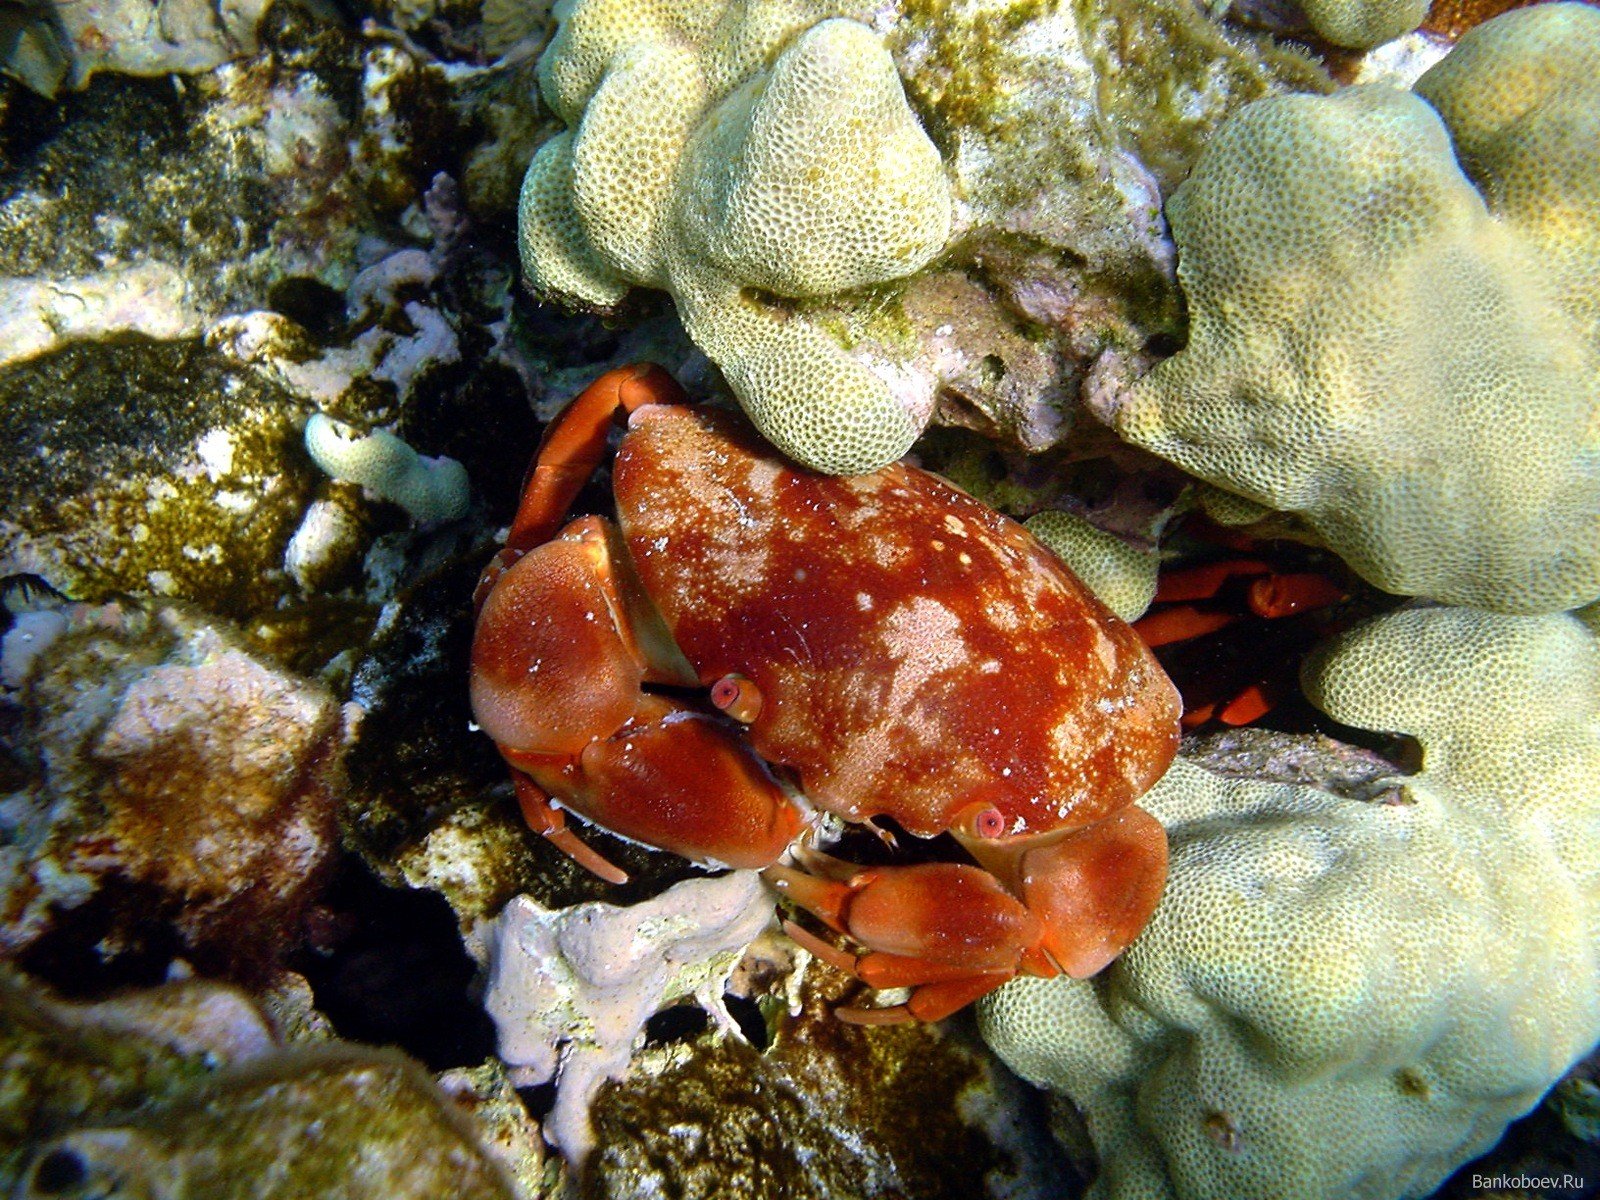 underwater, Crabs, Coral, Crustaceans Wallpaper